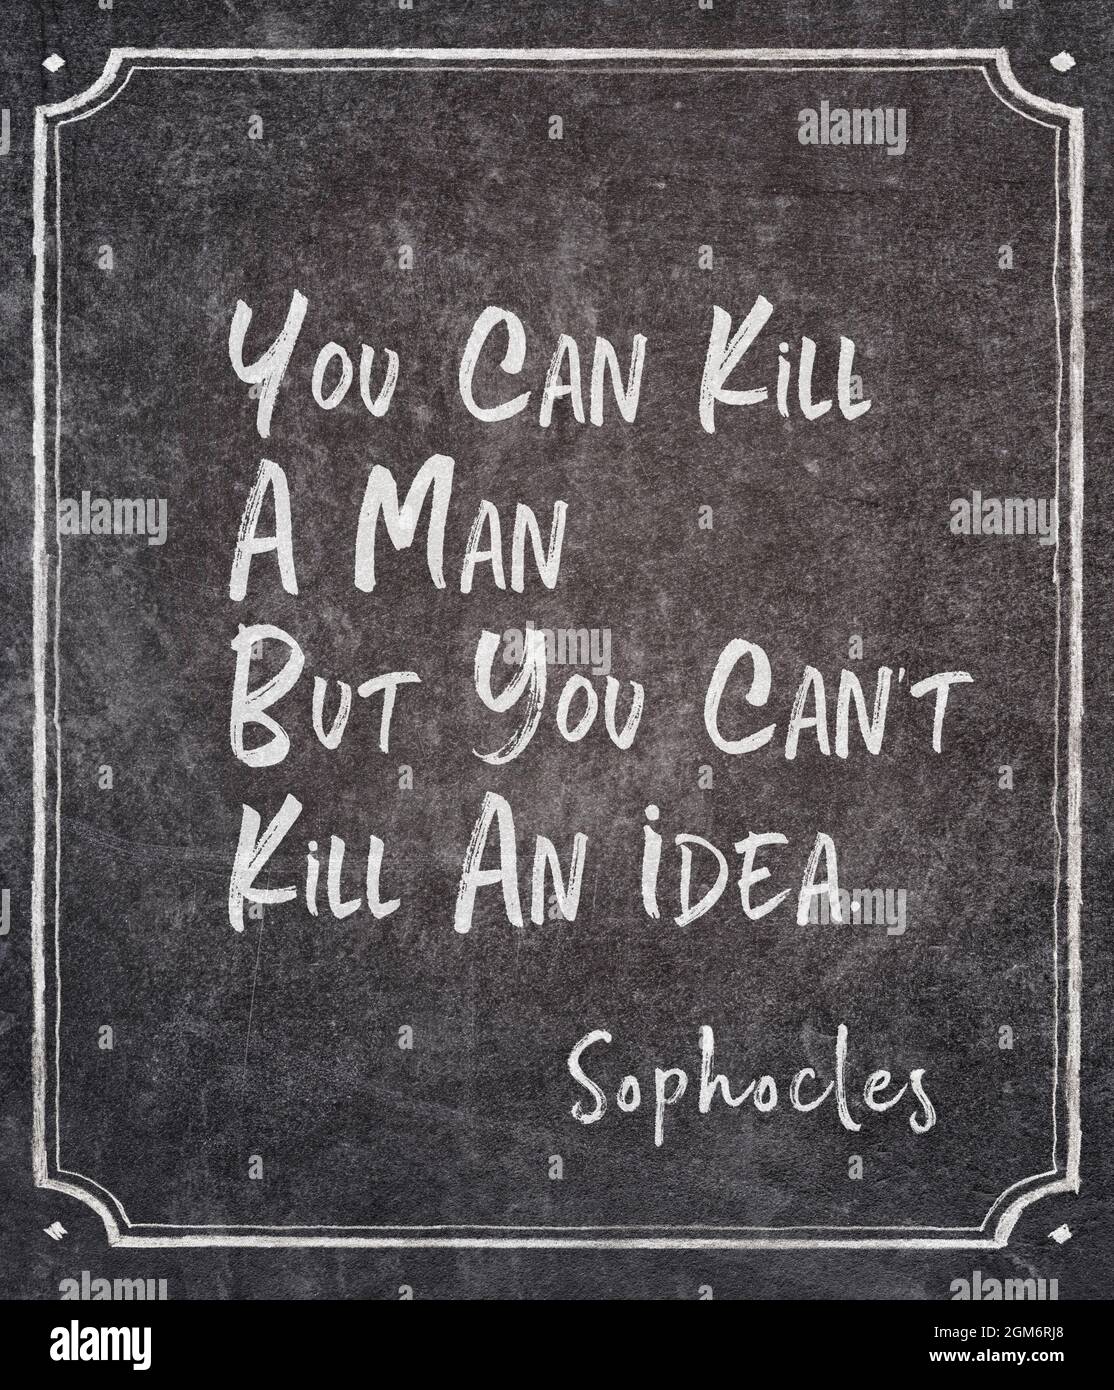 Si può uccidere un uomo, ma non si può uccidere un'idea - antico filosofo greco Sophocles citazione scritto su lavagna incorniciata Foto Stock